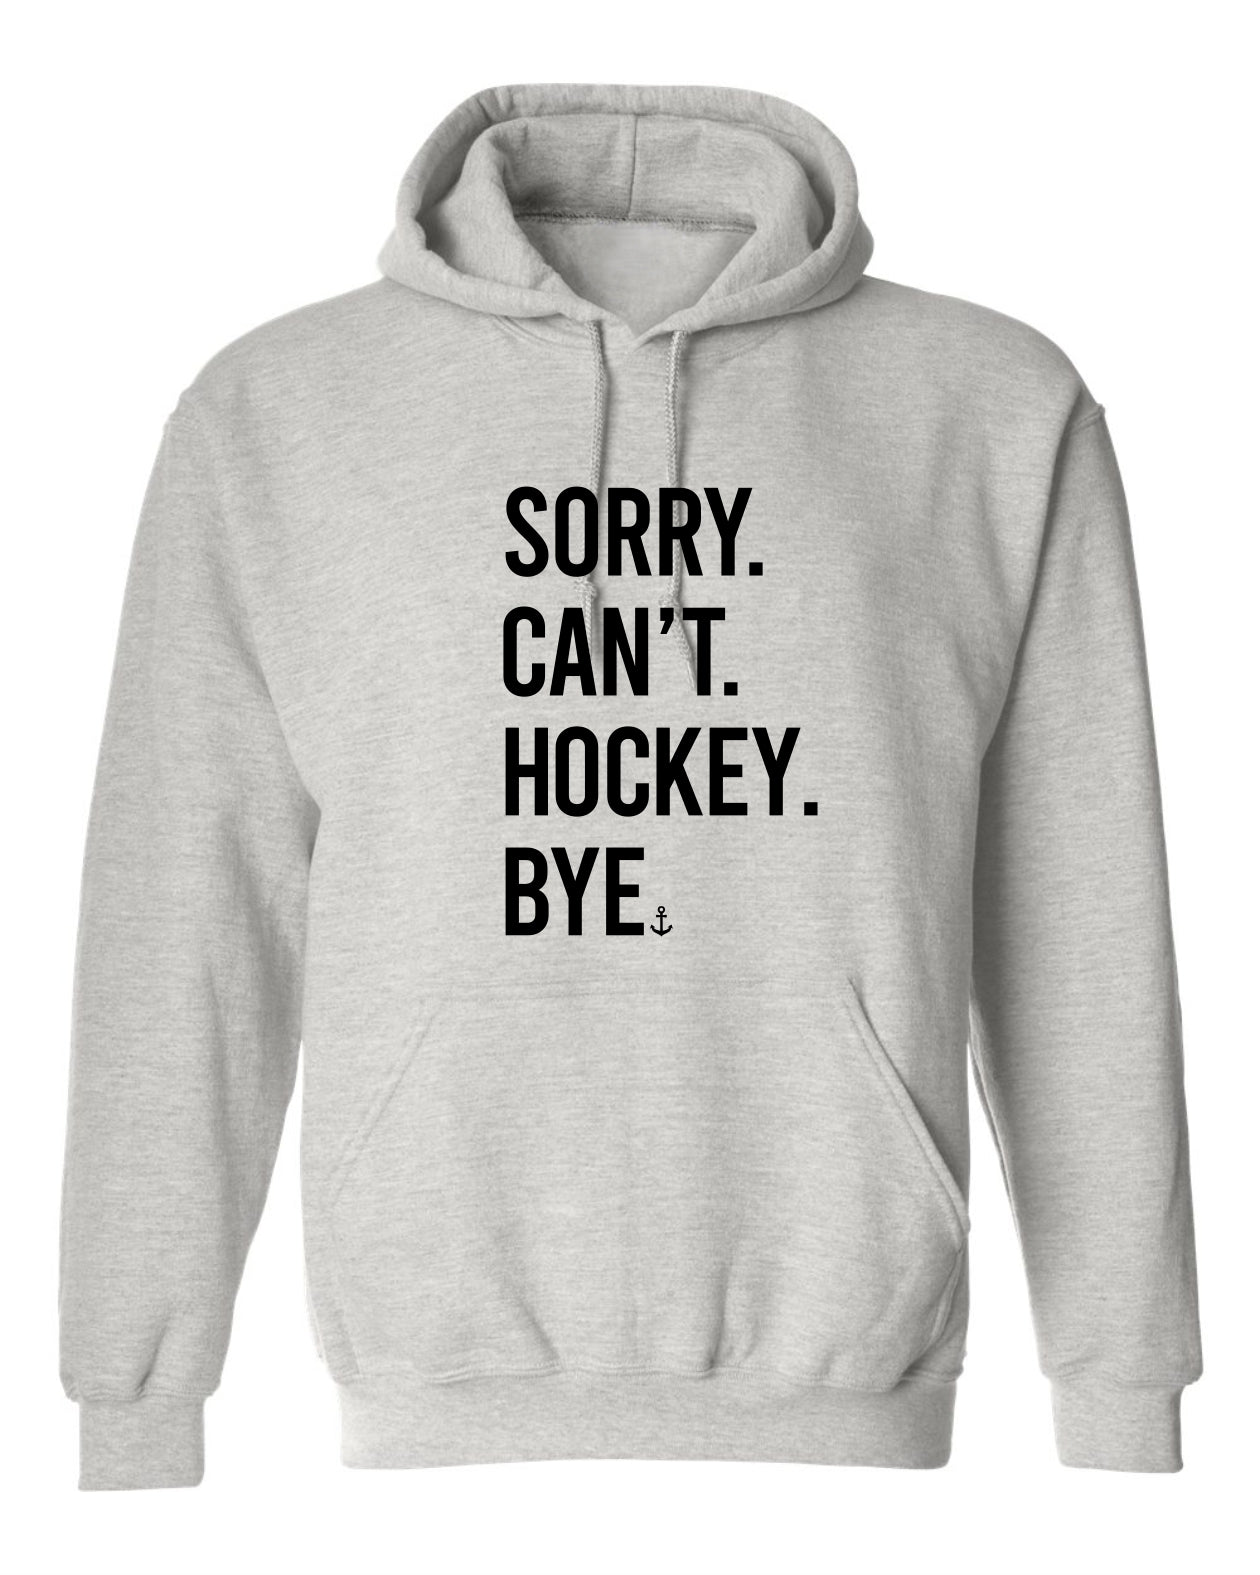 "Sorry. Can't. Hockey. Bye." Unisex Hoodie